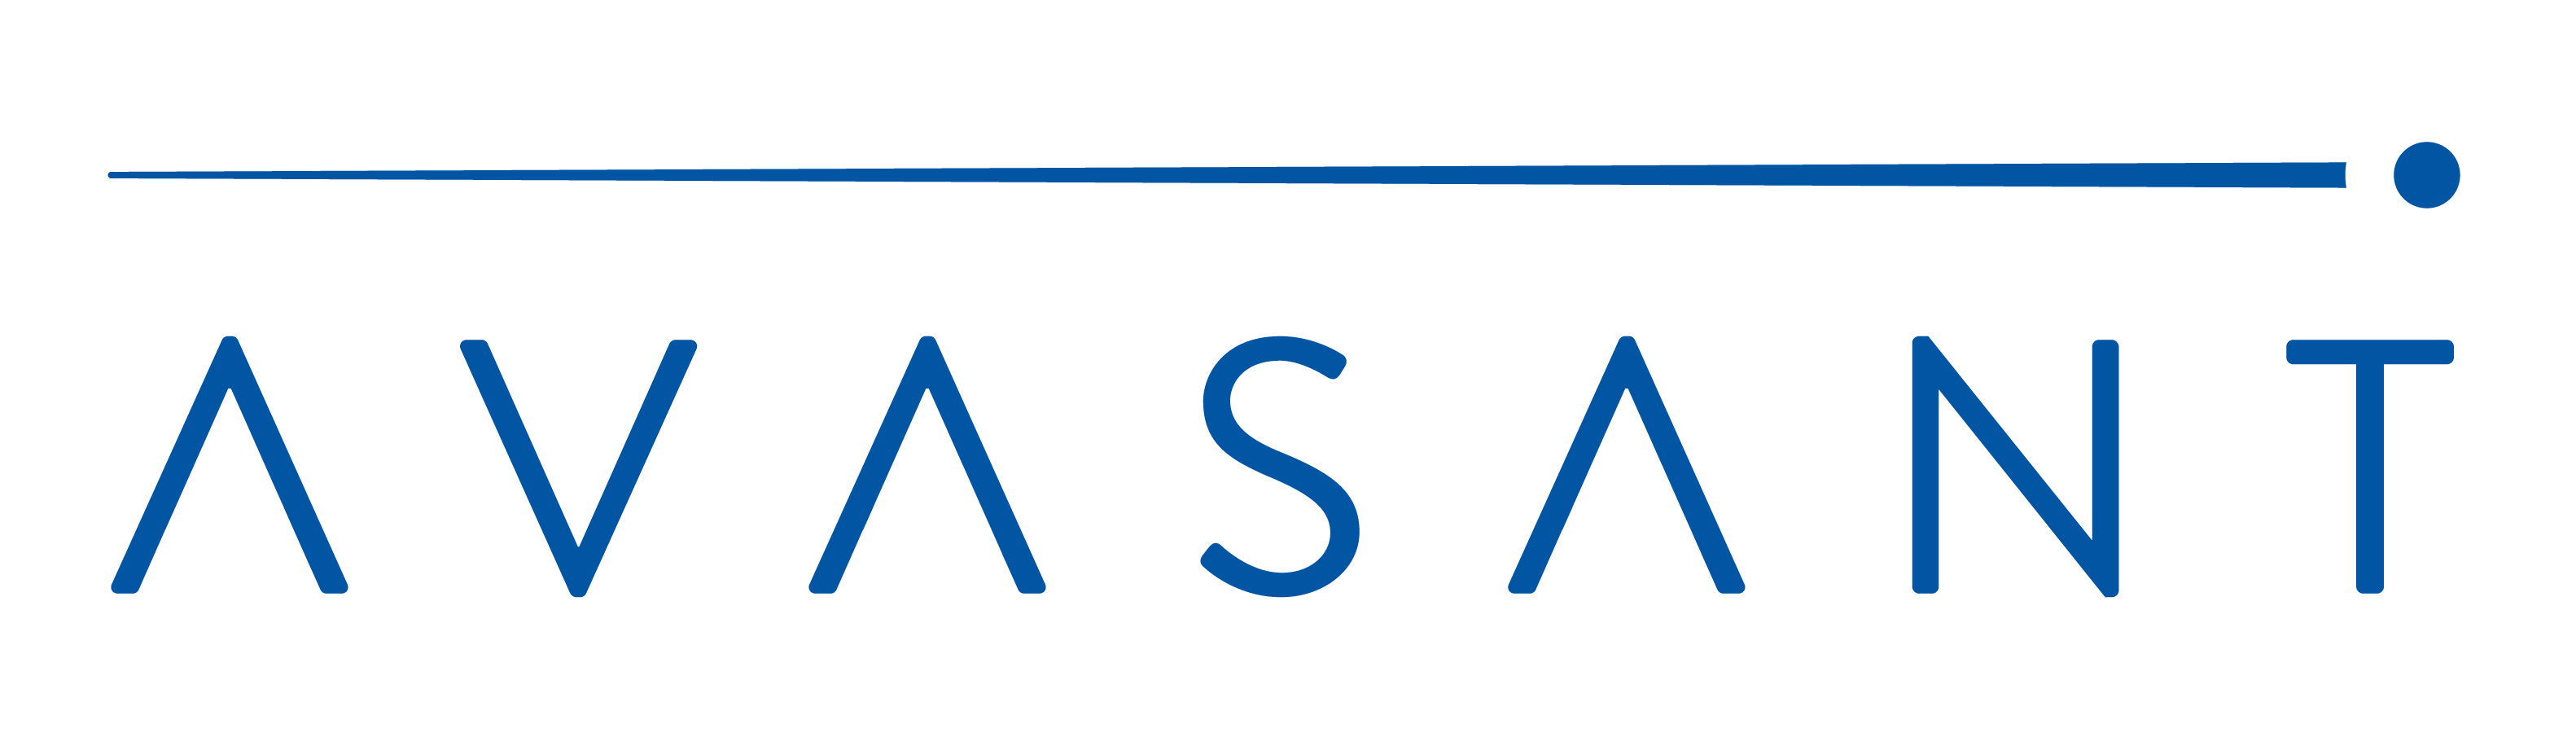 Avasant logo